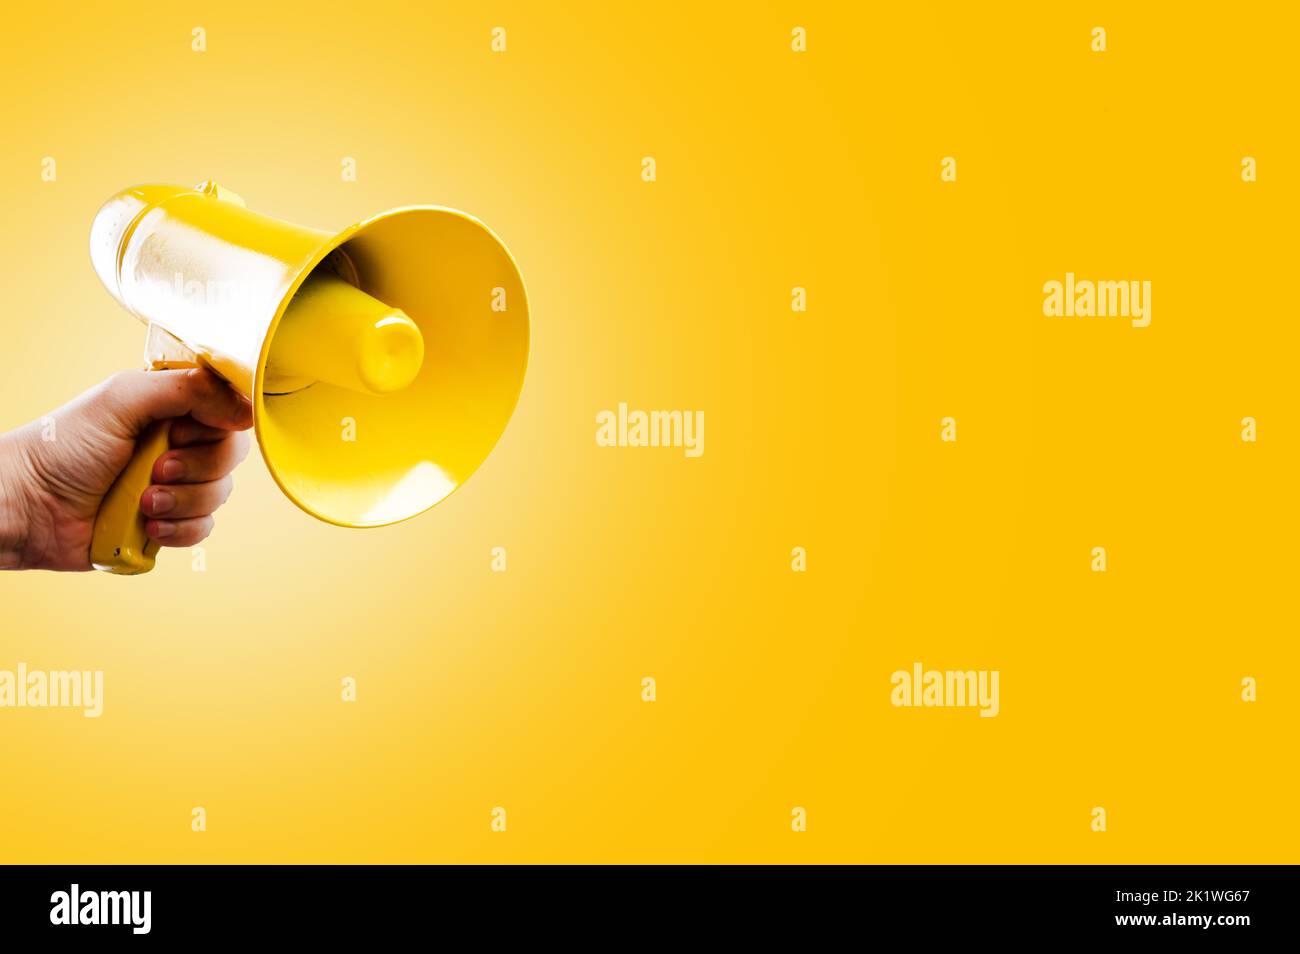 Auf einem leuchtend gelben Hintergrund befindet sich ein gelbes Megaphon in der Hand einer Person. Symbol für falsche Informationen, Gerüchte, Fälschungen. Wahldebatten, Propaganda Stockfoto